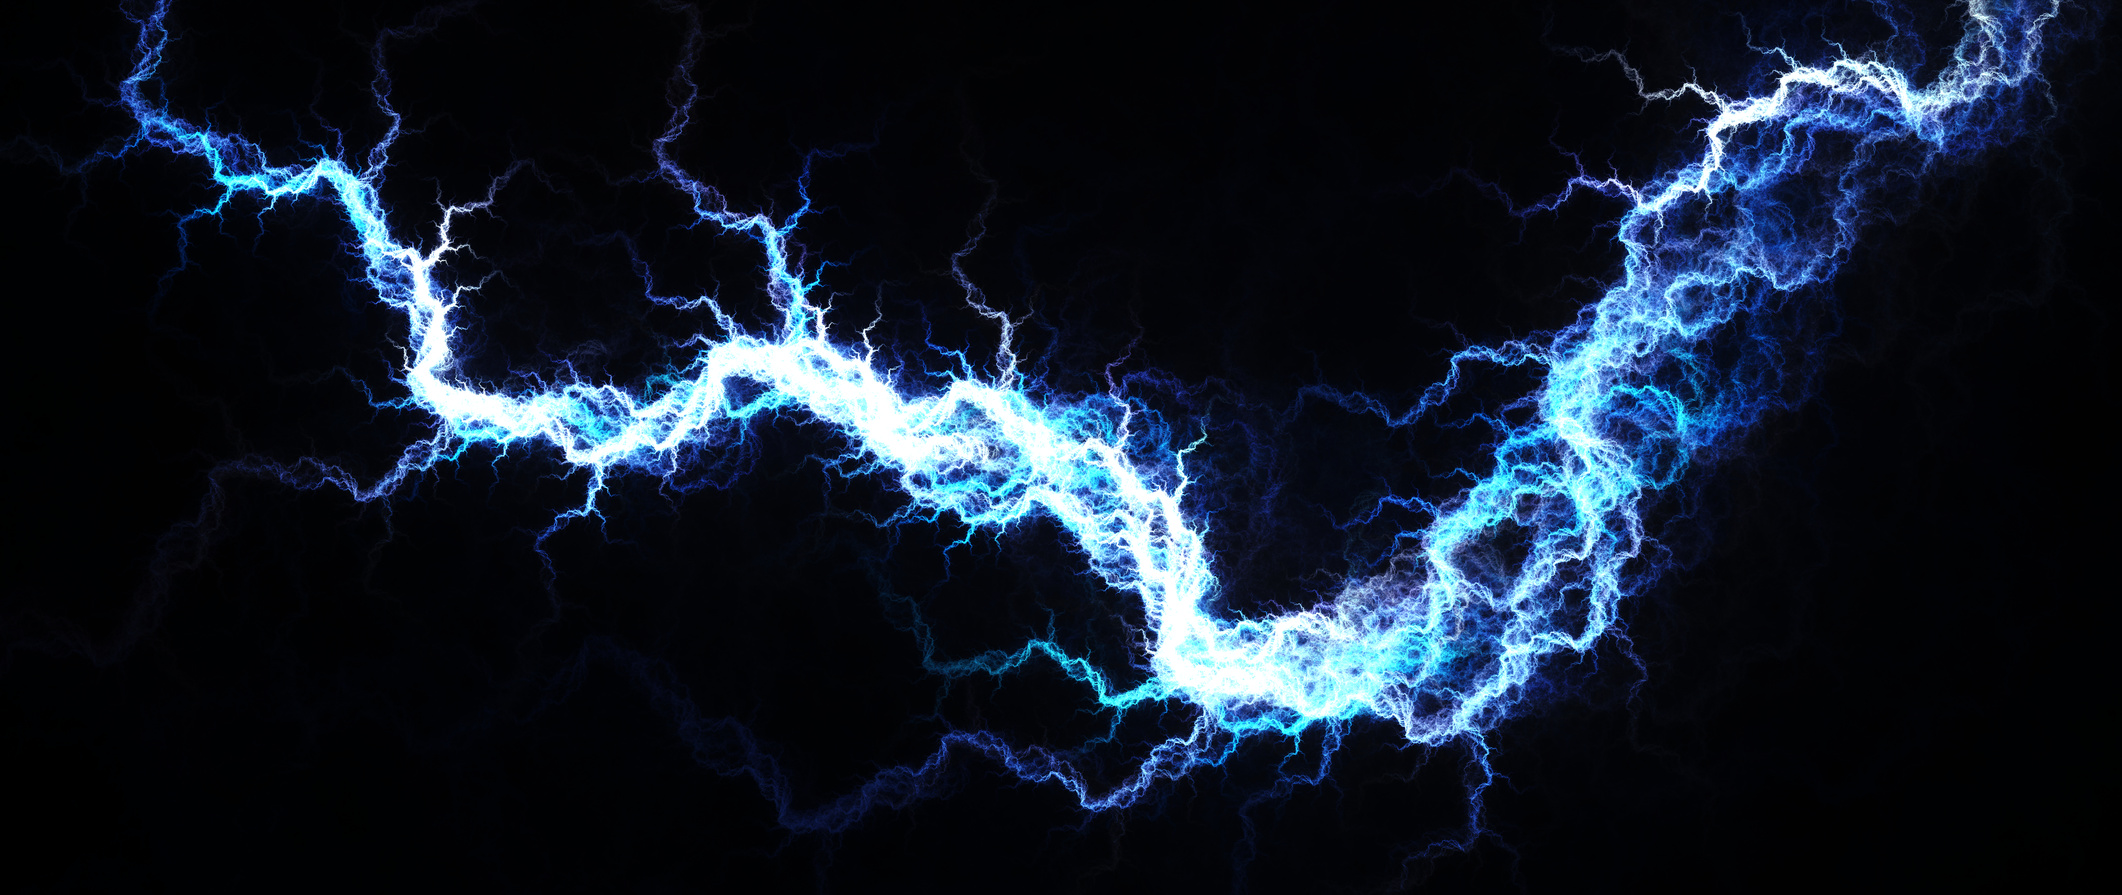 Electric Blue – Digital fractal of hot blue lightning, electrical background.